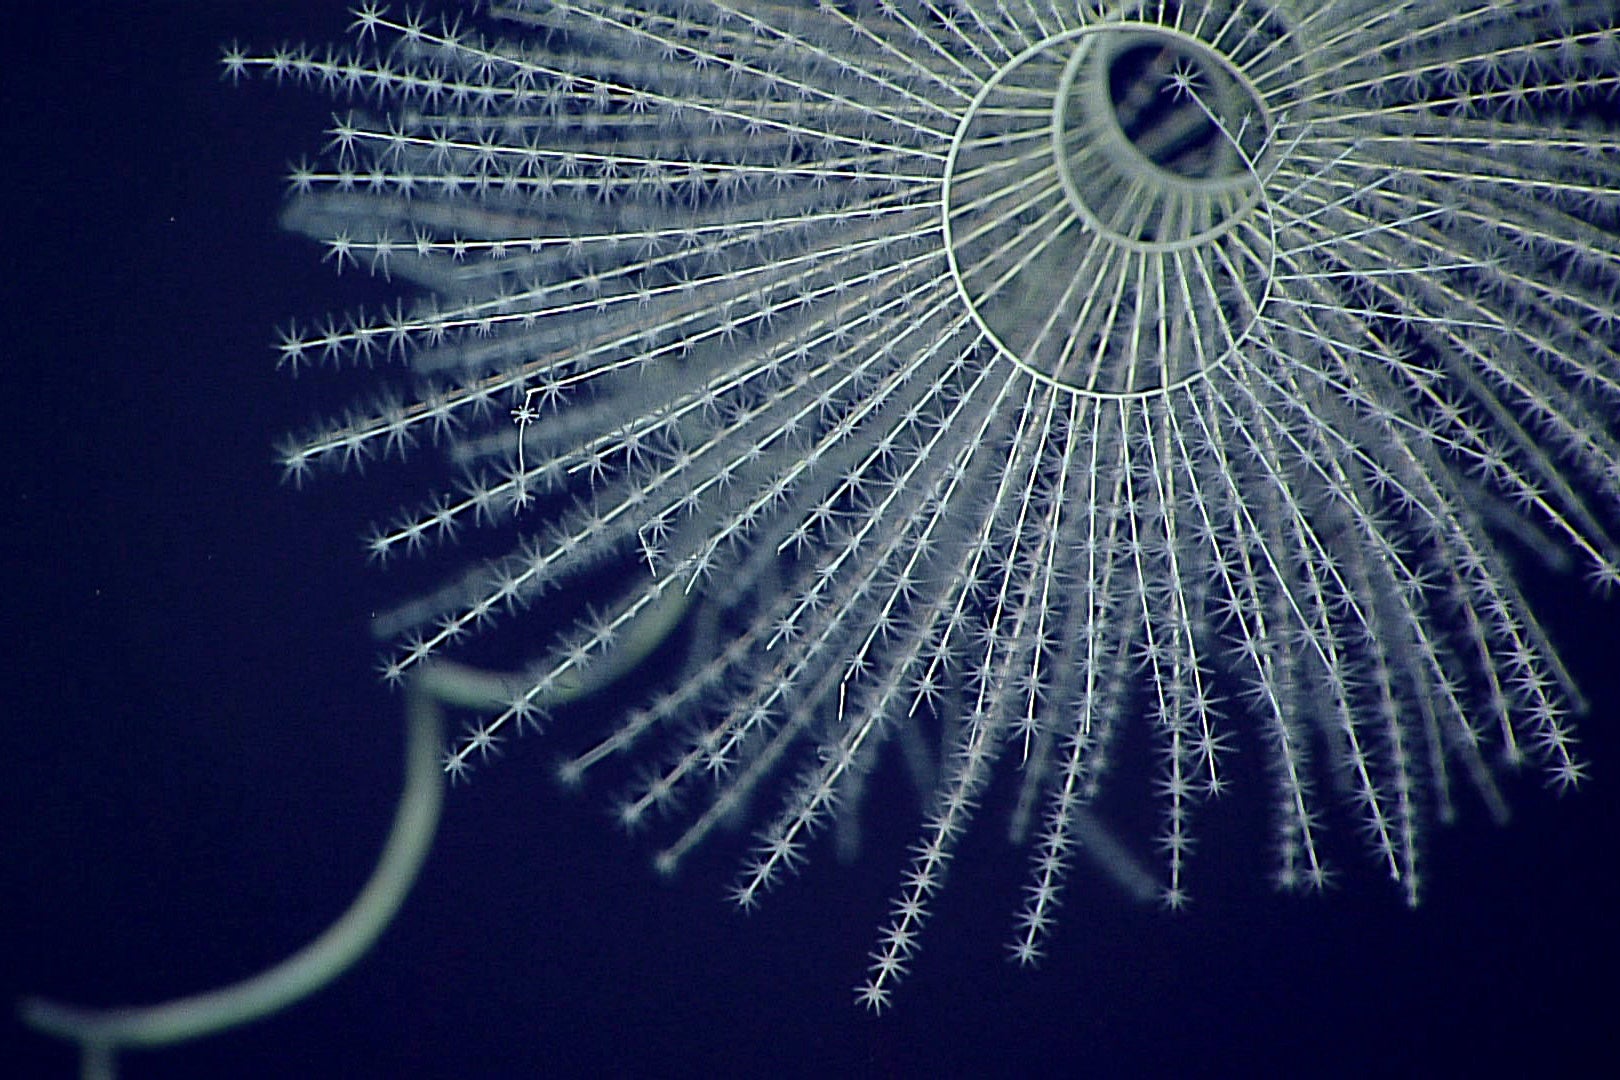 Deep-sea octocoral